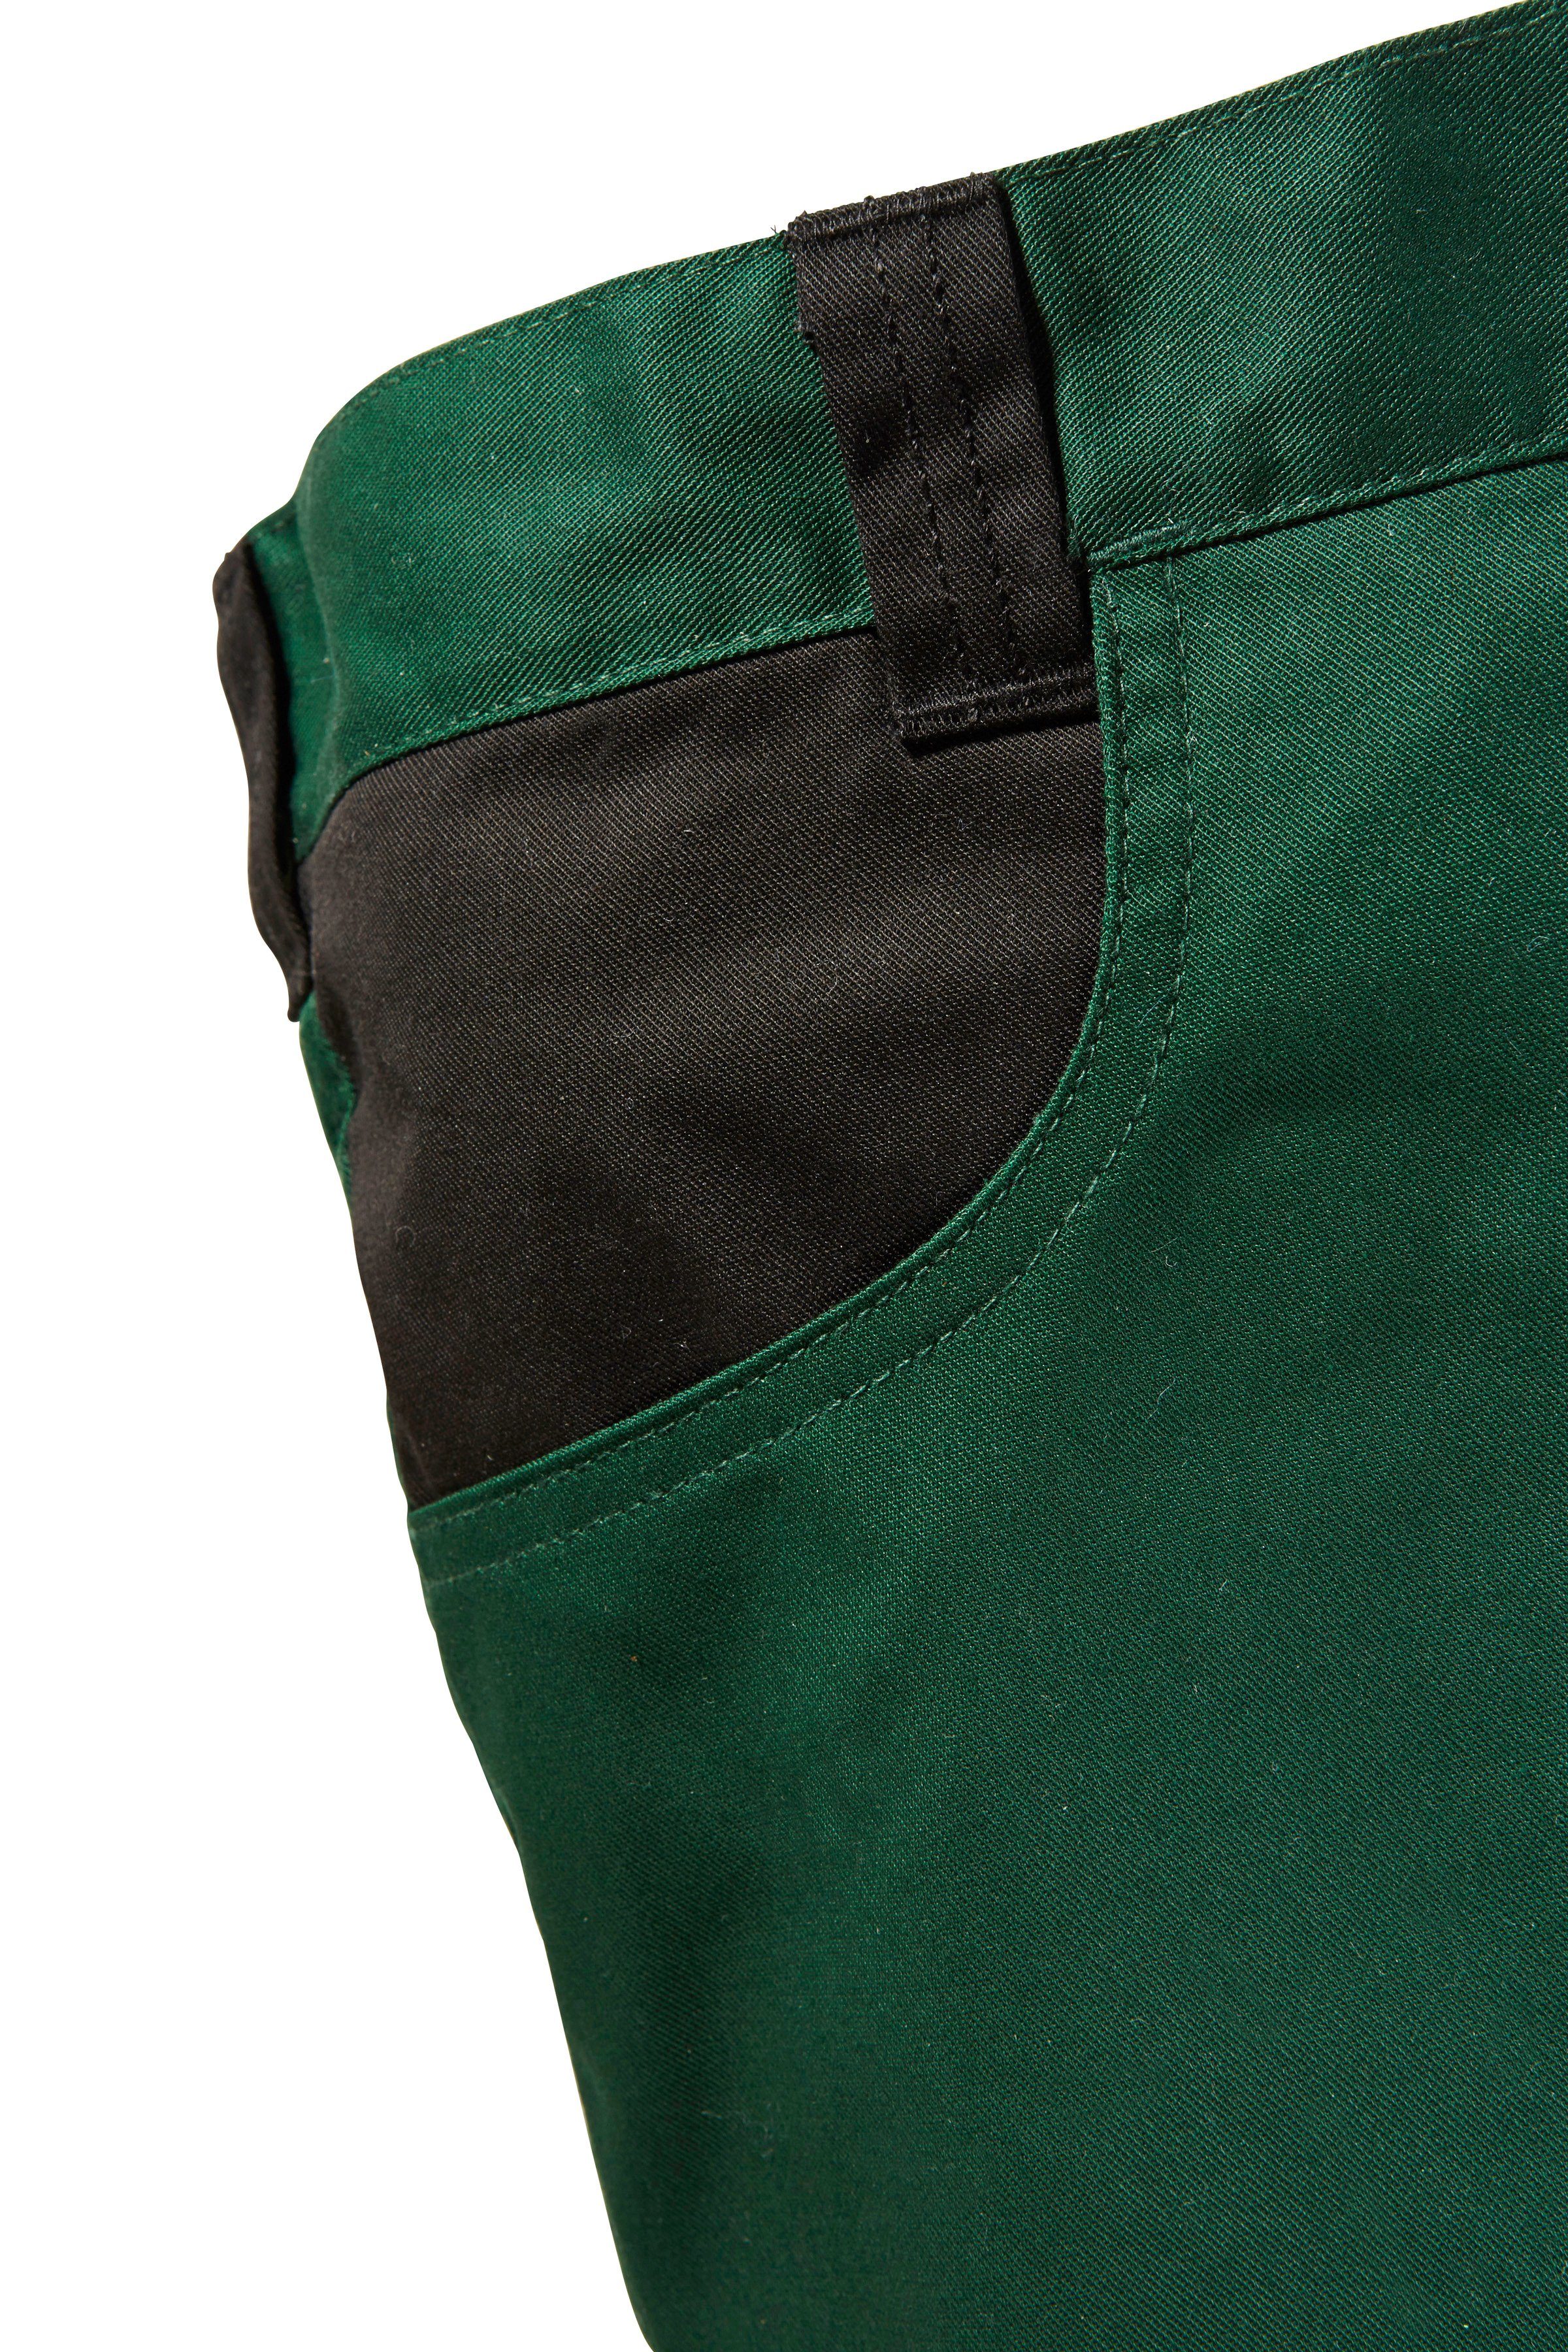 Arbeitshose safety& mit Knieverstärkung grün-schwarz more Pull